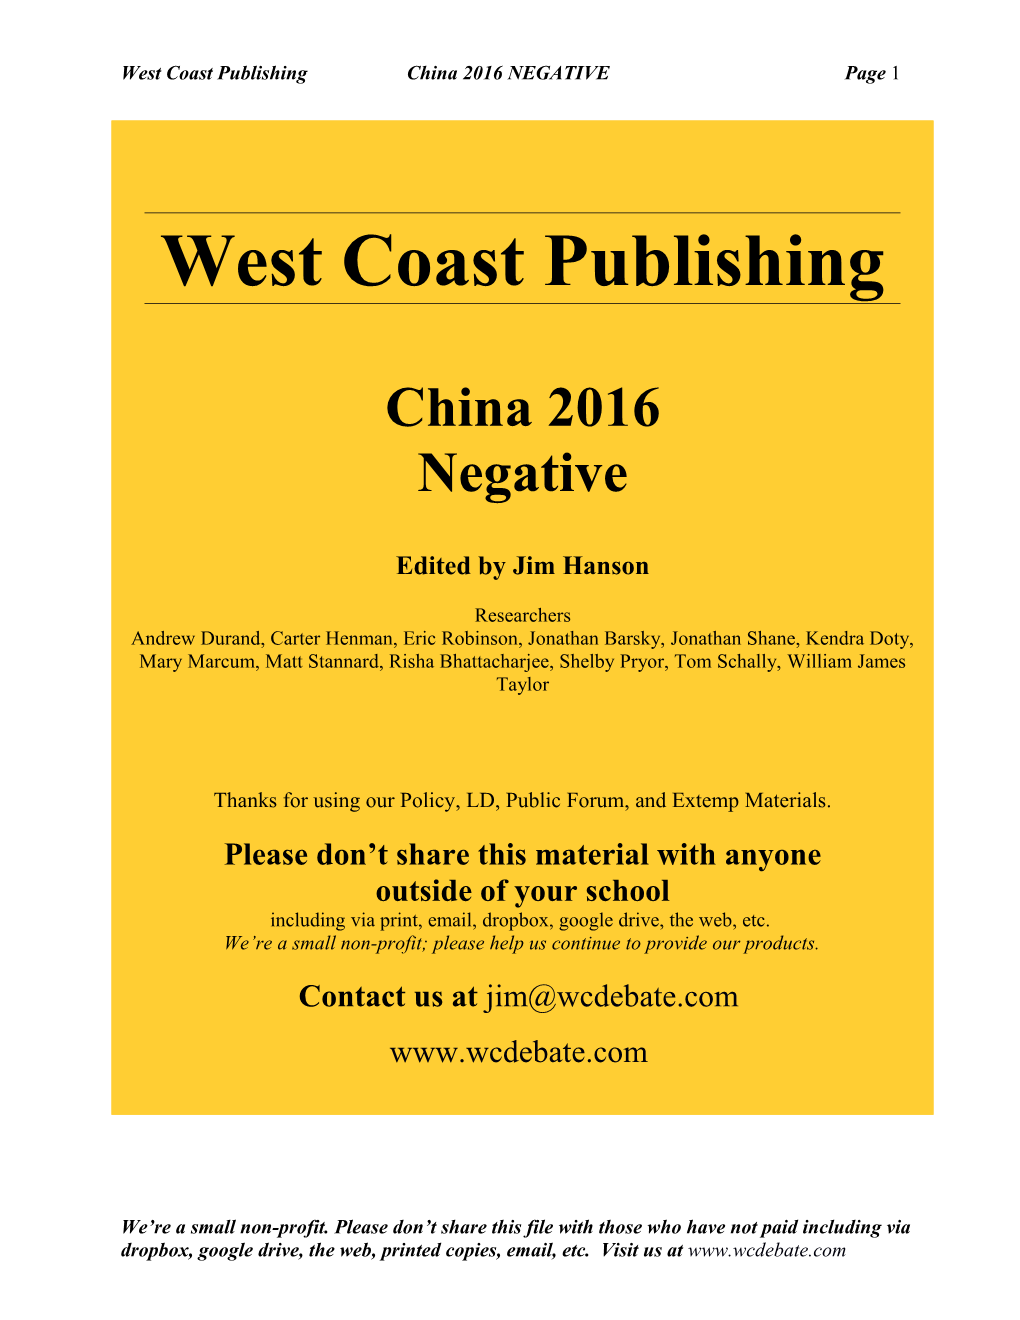 West Coast Publishing China 2016 Negativepage 1